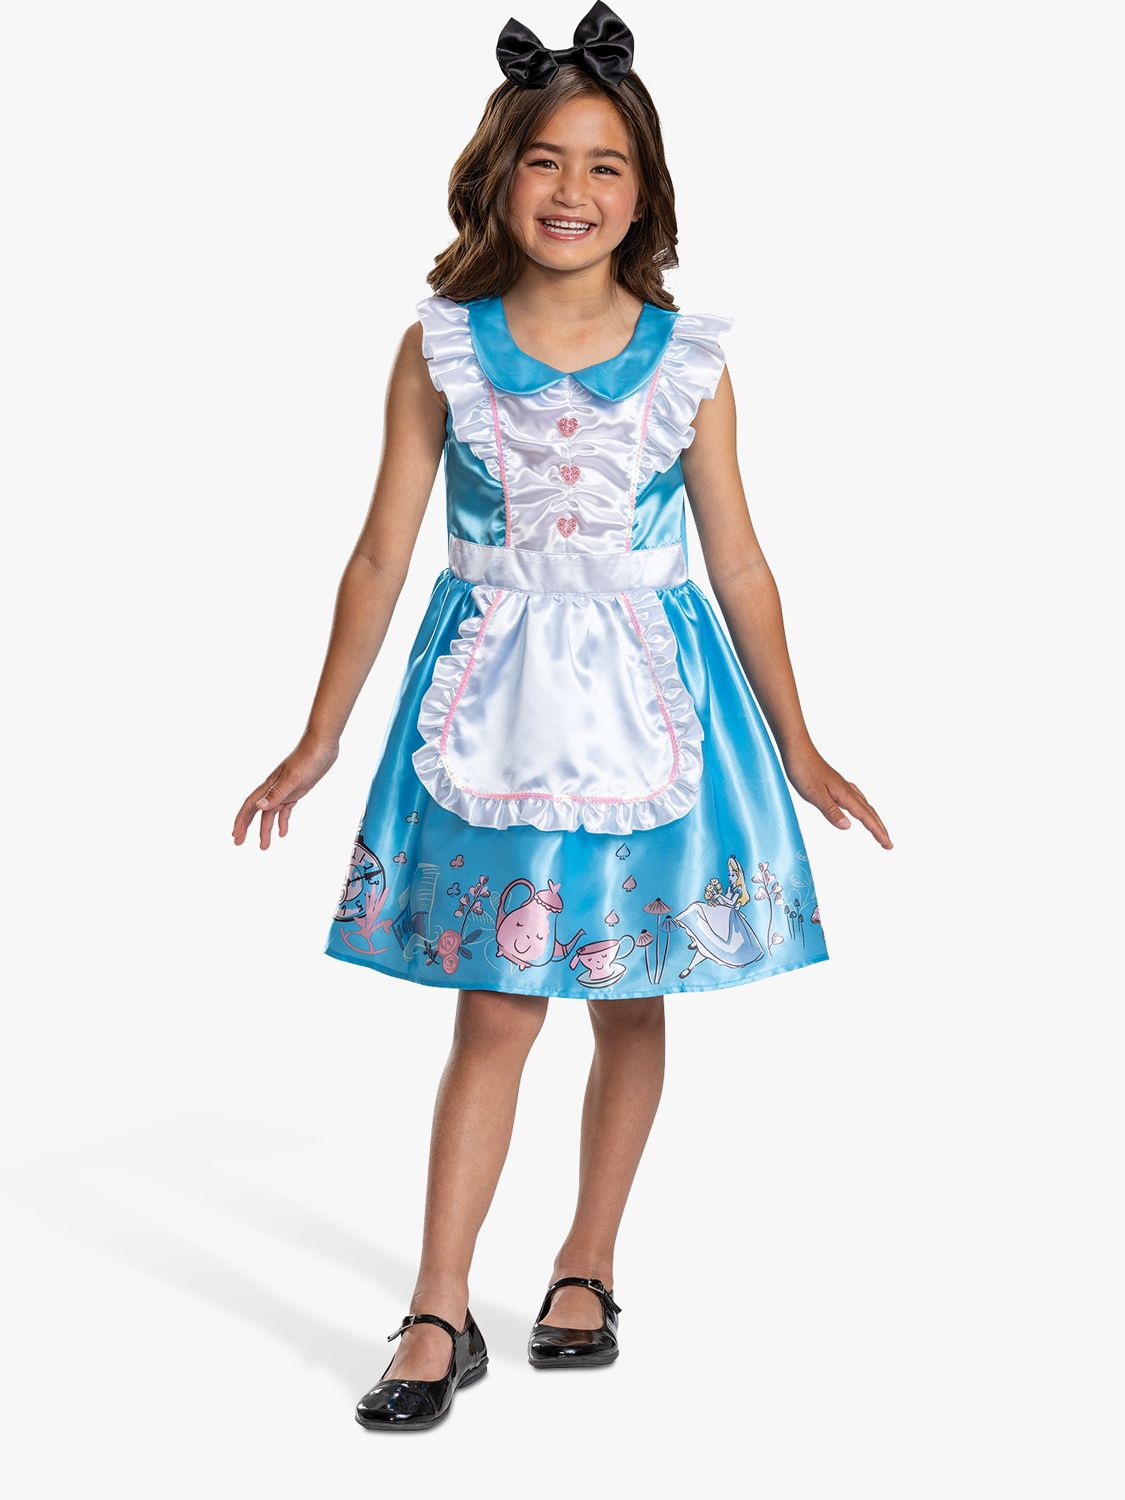 Disney Princess Alice Girls Briefs Kids Underwear Cute Cotton